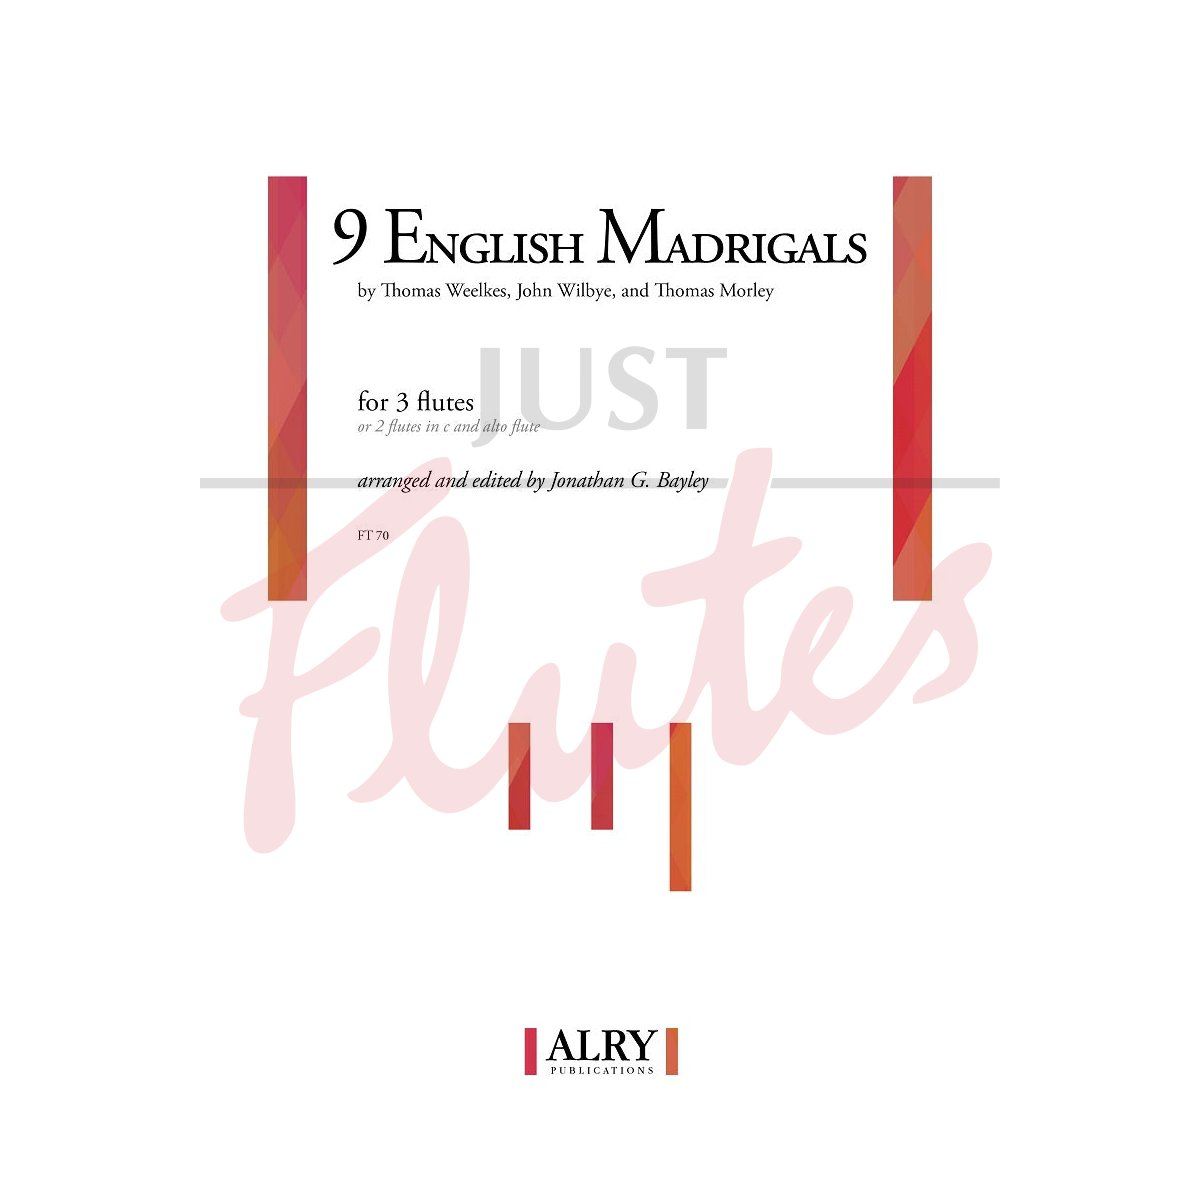 Nine English Madrigals for Flute Trio